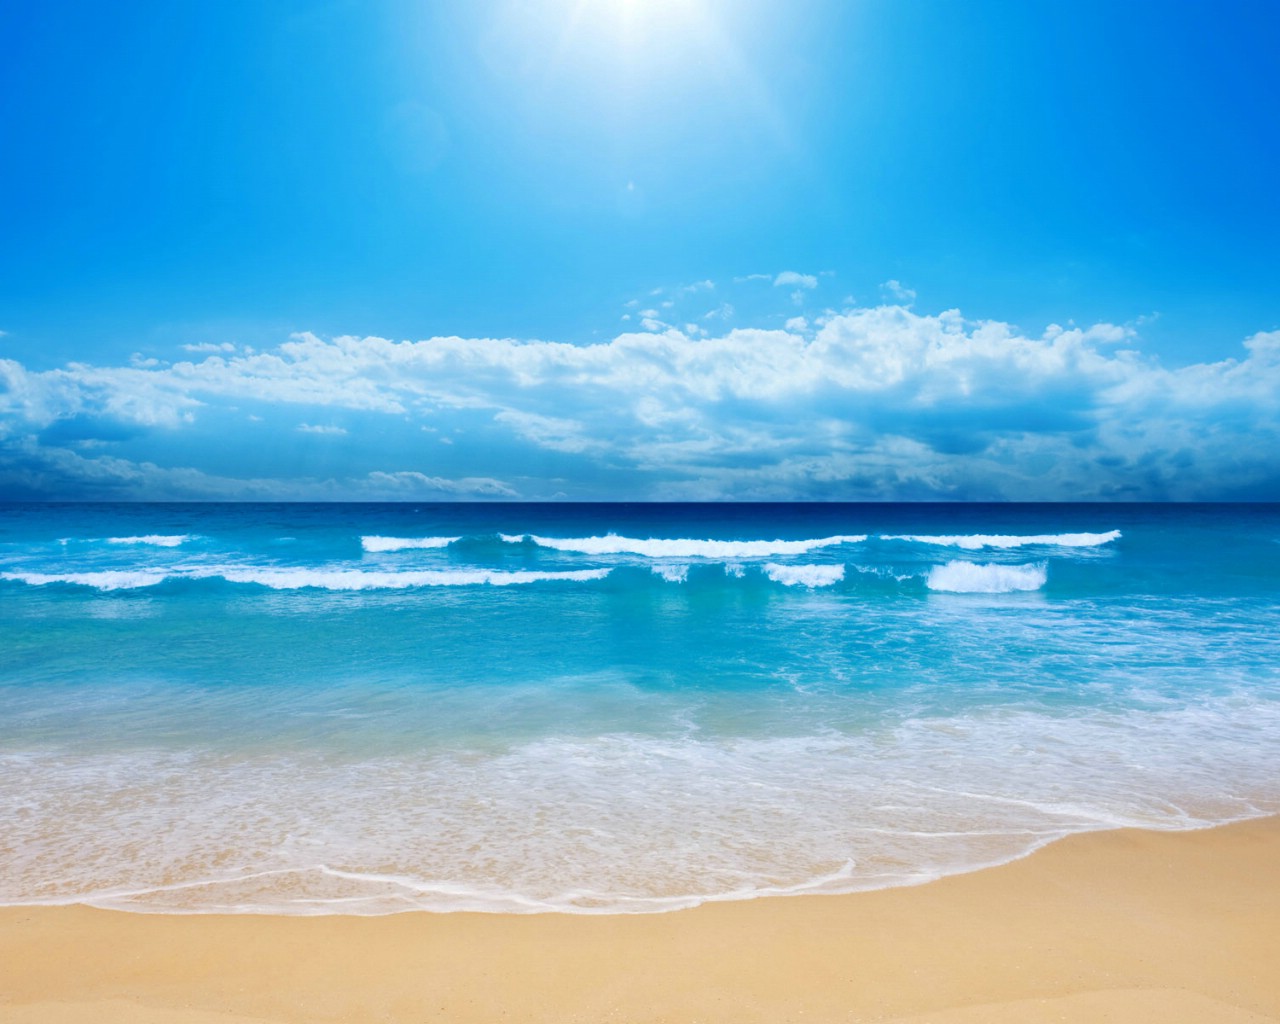 蓝色海洋沙滩 桌酷精选一图 壁纸71600x1200